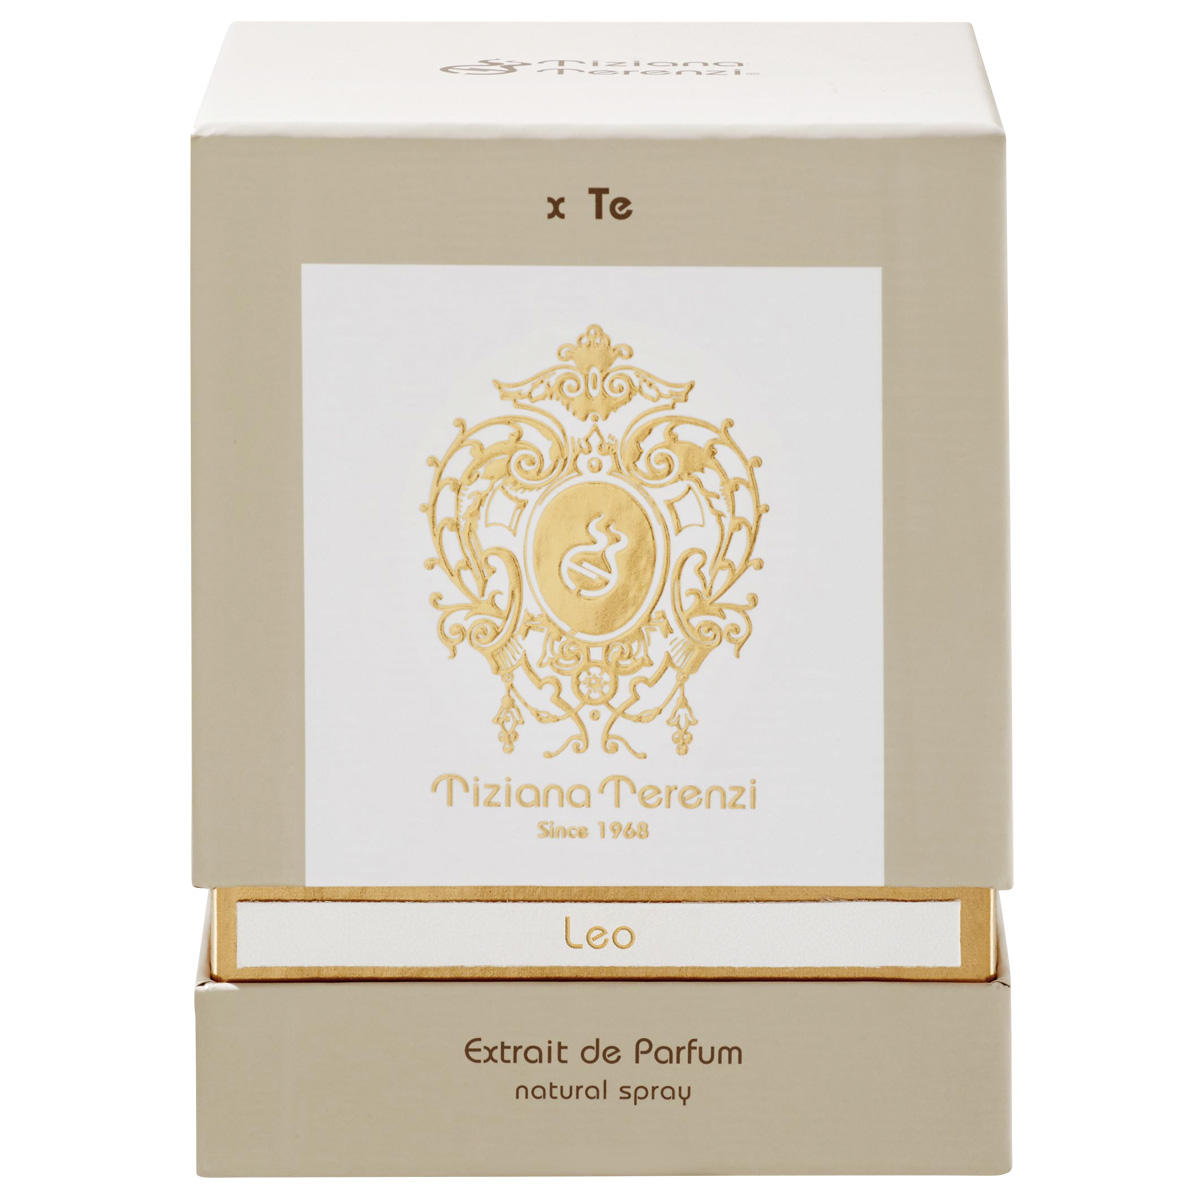 Tiziana Terenzi Leo Extrait de Parfum 100 ml - 3